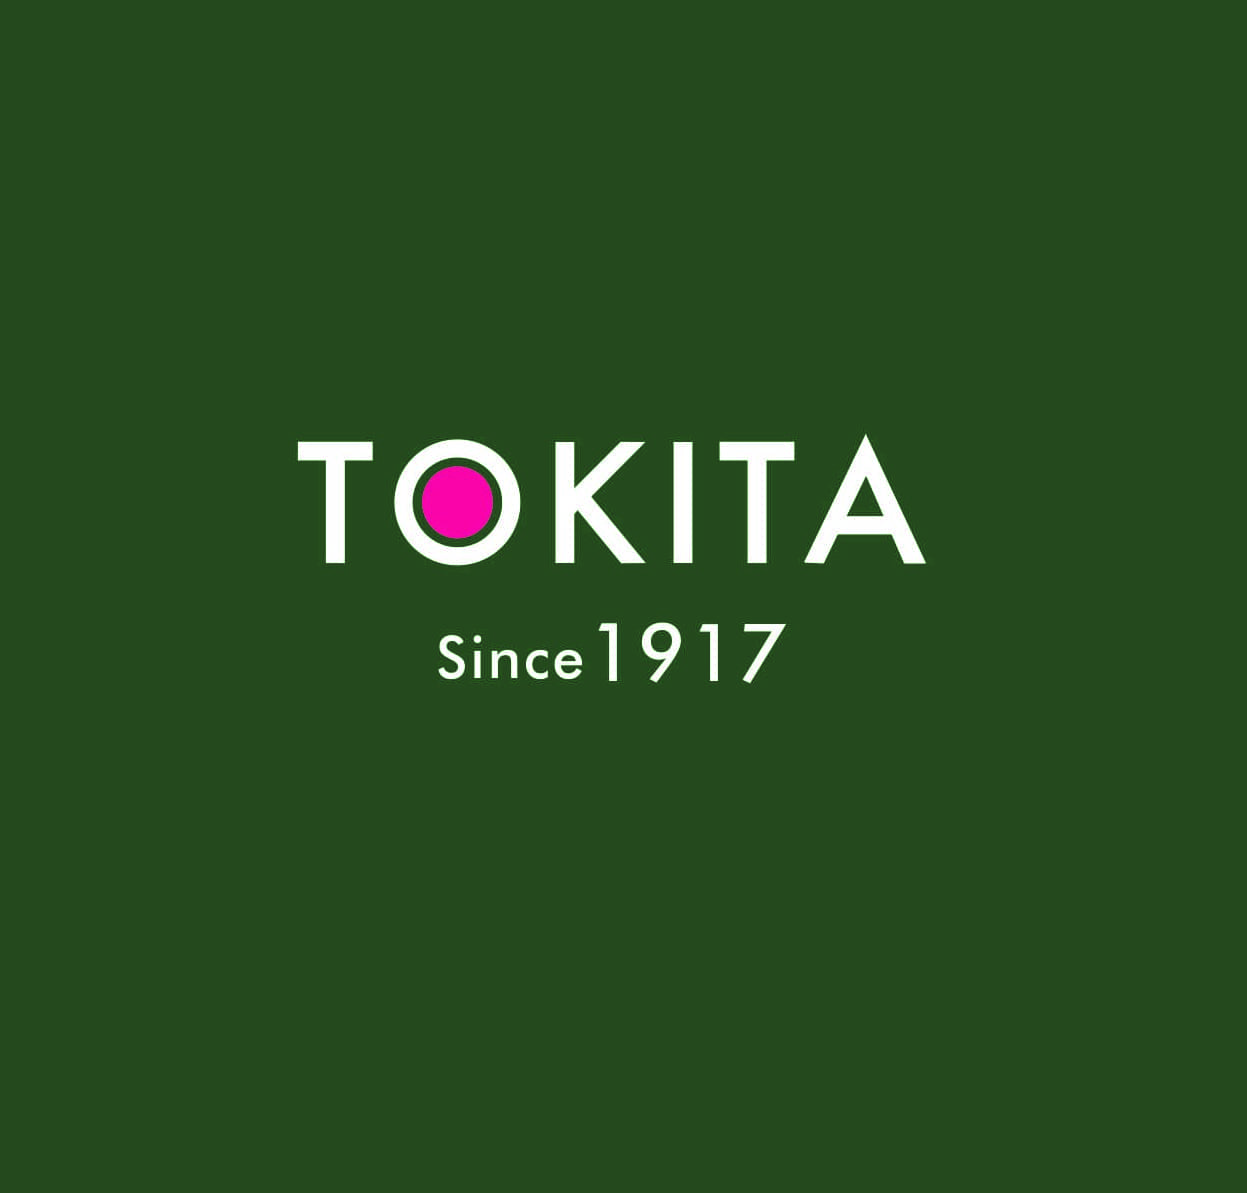 Tokita Logo Since 1917